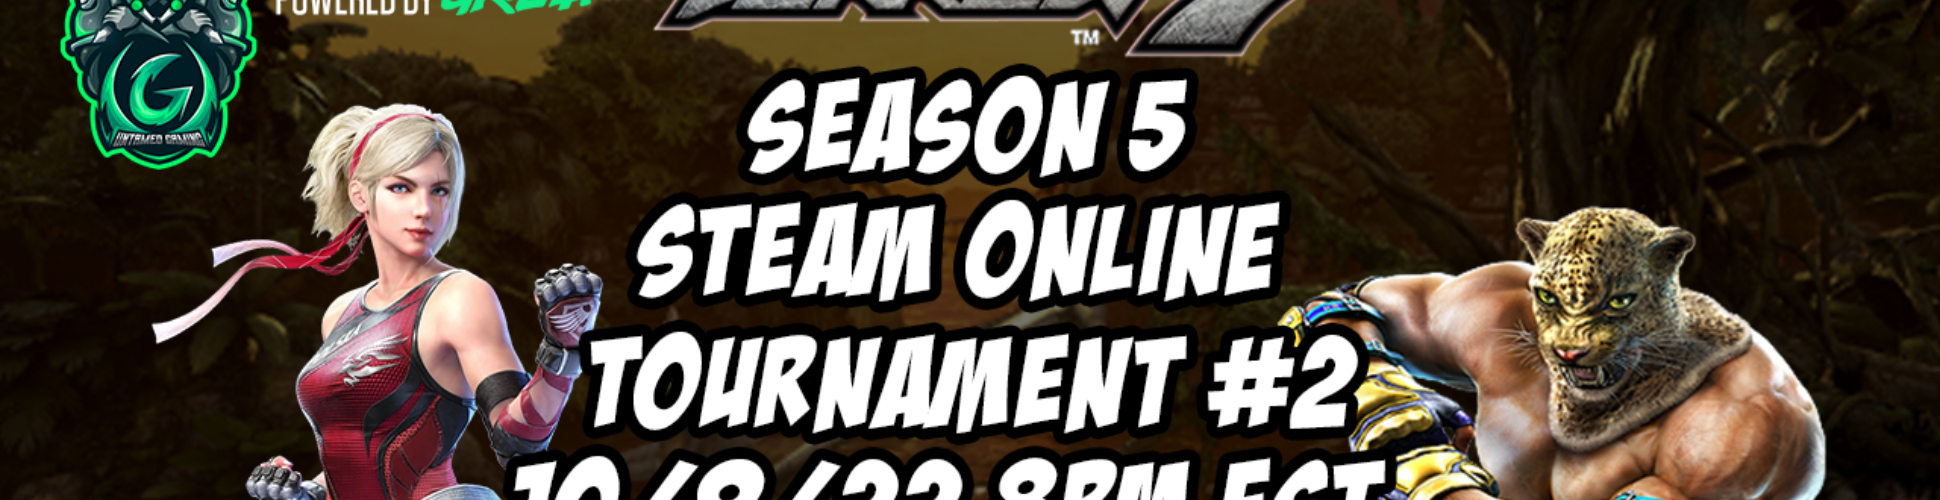 Tekken 7 Season 5 Steam Online Tournament #2 10/9/22 8pm EST